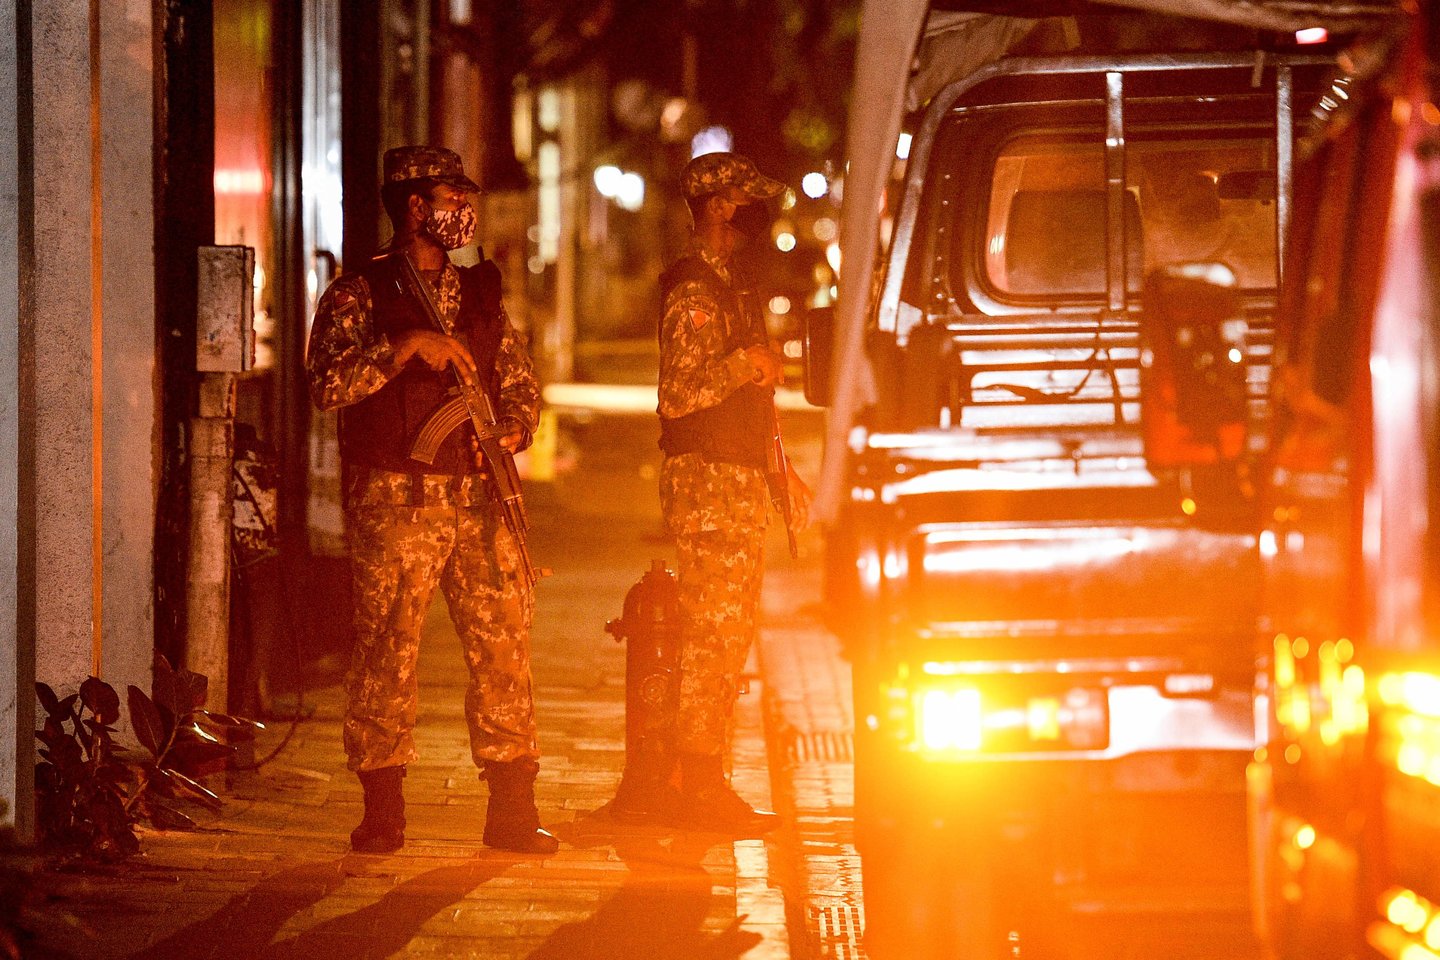  Ginkluoti policininkai ir saugumo pajėgos apsupo incidento vietą sostinėje Malėje. Šiuo metu atostogaujantis Maldyvų parlamentas po atakos sušaukė nepaprastąjį posėdį.<br> AFP/Scanpix nuotr.